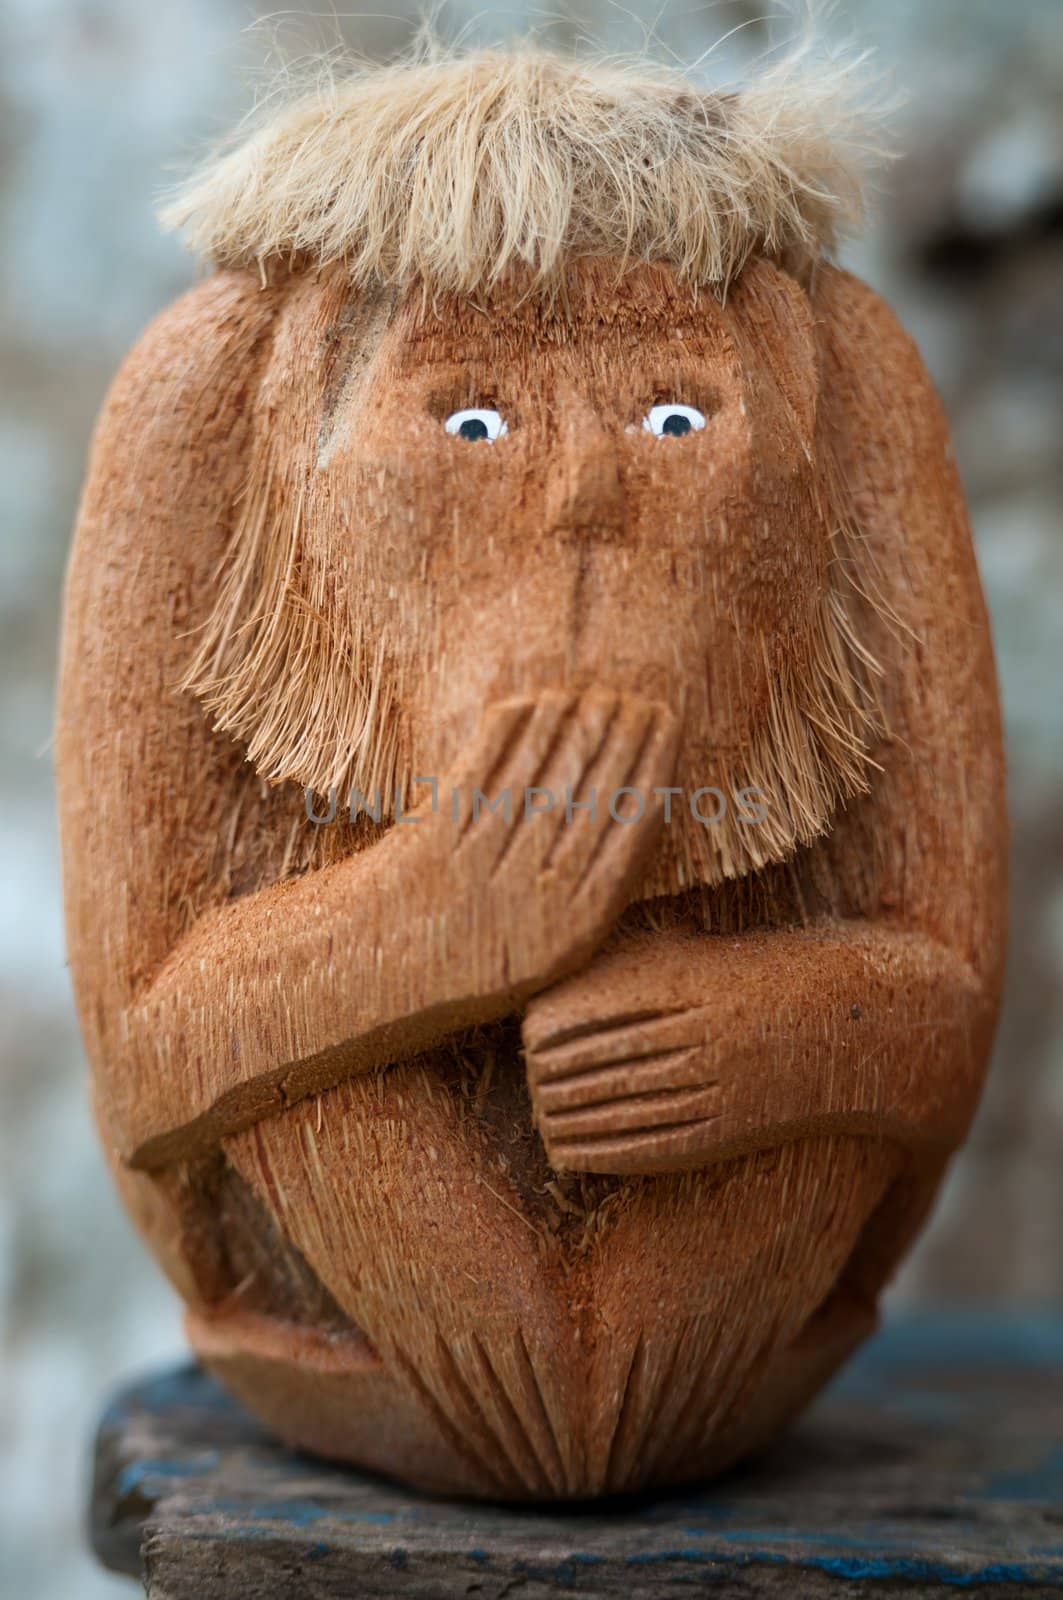 Handmade wooden monkey with unspoken gesture by iryna_rasko